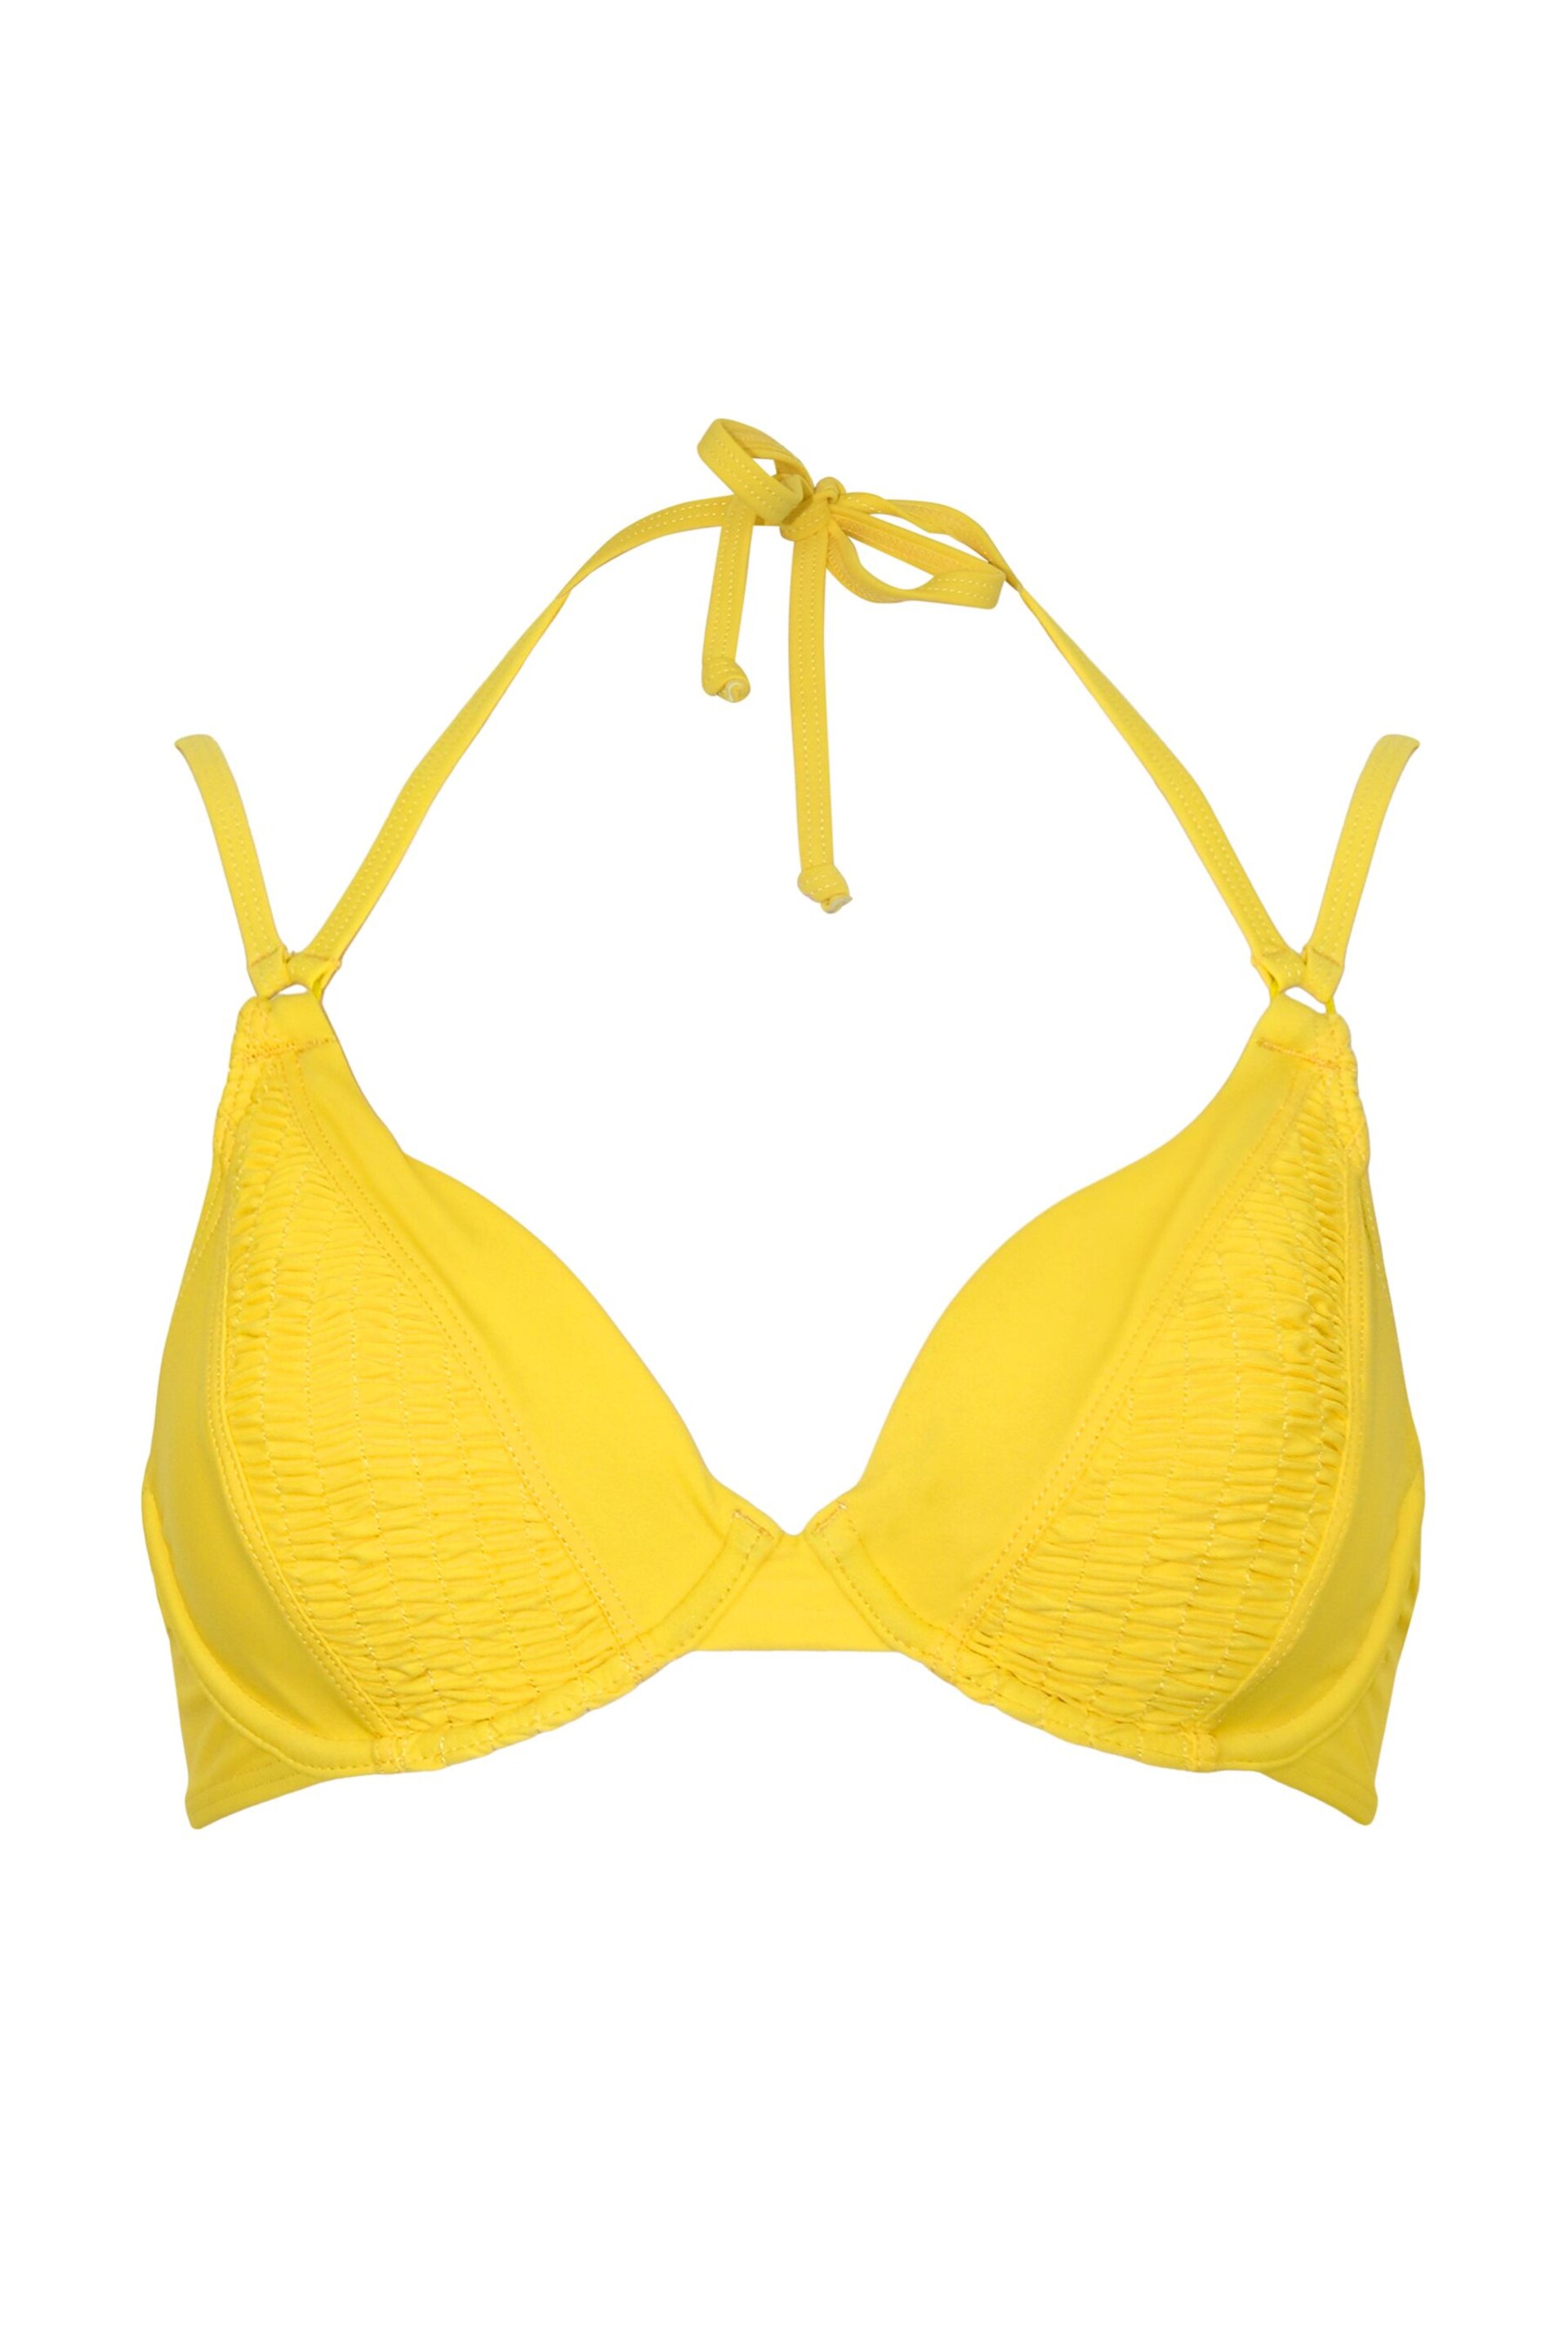 Pour Moi Yellow Gold Coast Double Strap Bikini Top - Image 4 of 5